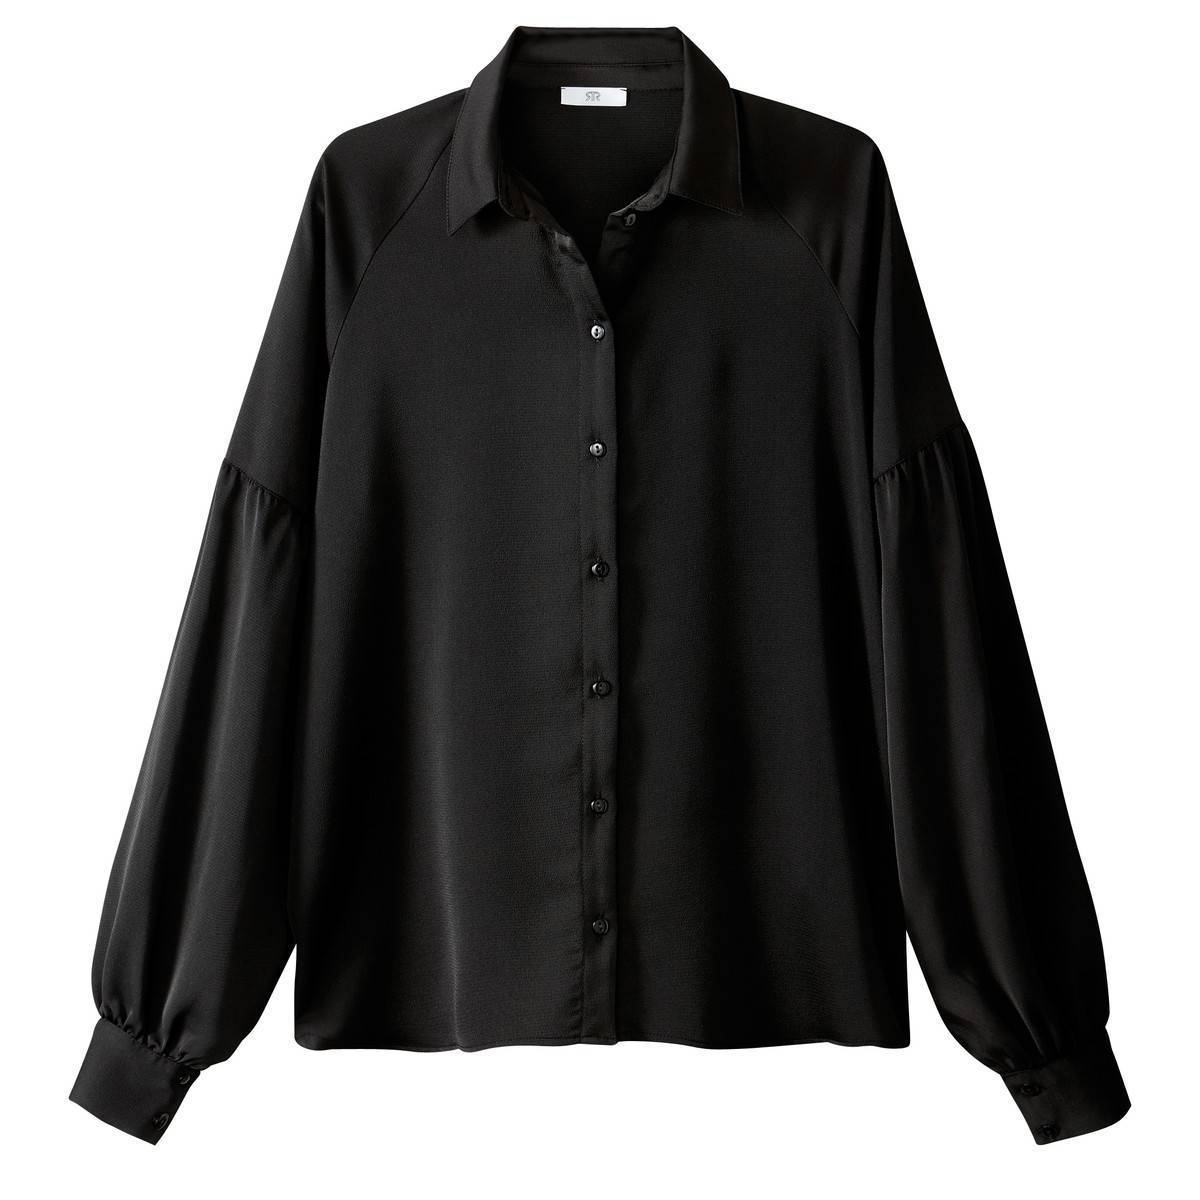 Черная блузка с длинным рукавом. Devred 1902 черная рубашка. Чёрная блузка женская. Рубашка женская черная с длинным рукавом. Чёрная рубашка женская оверсайз.